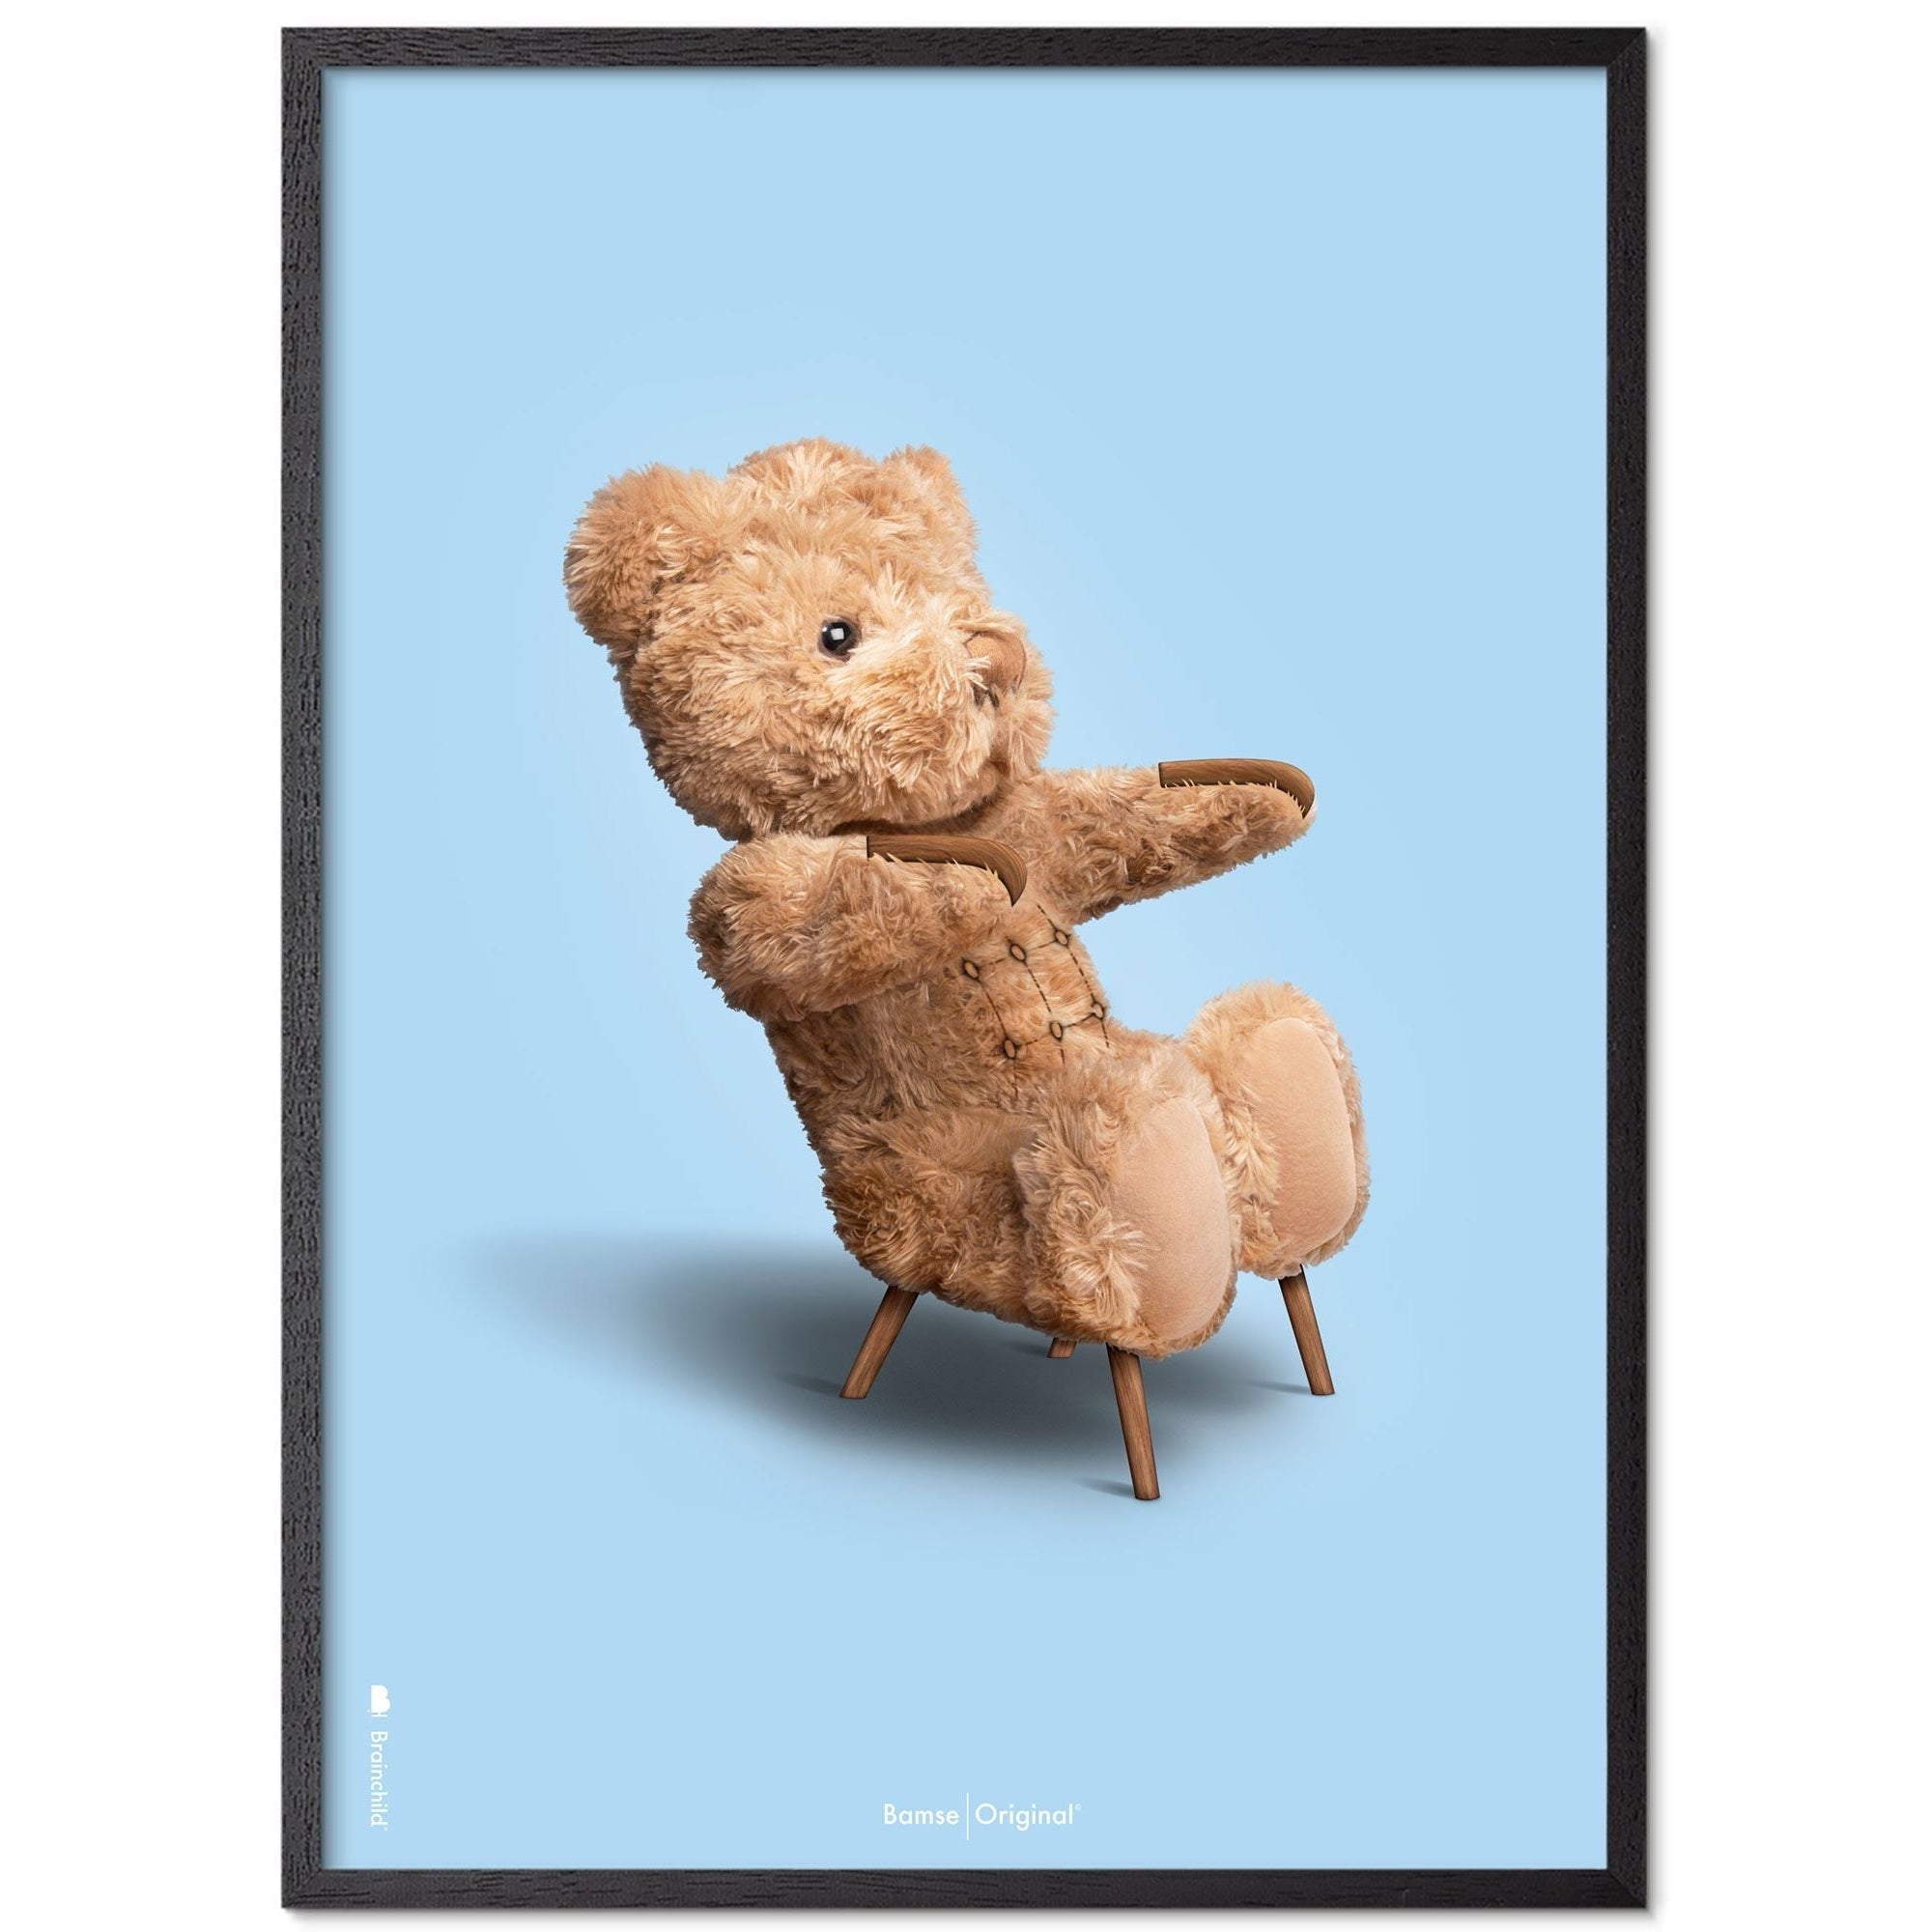 Brainchild Teddybeer klassiek poster frame gemaakt van zwart gelakt hout 50x70 cm, lichtblauwe achtergrond